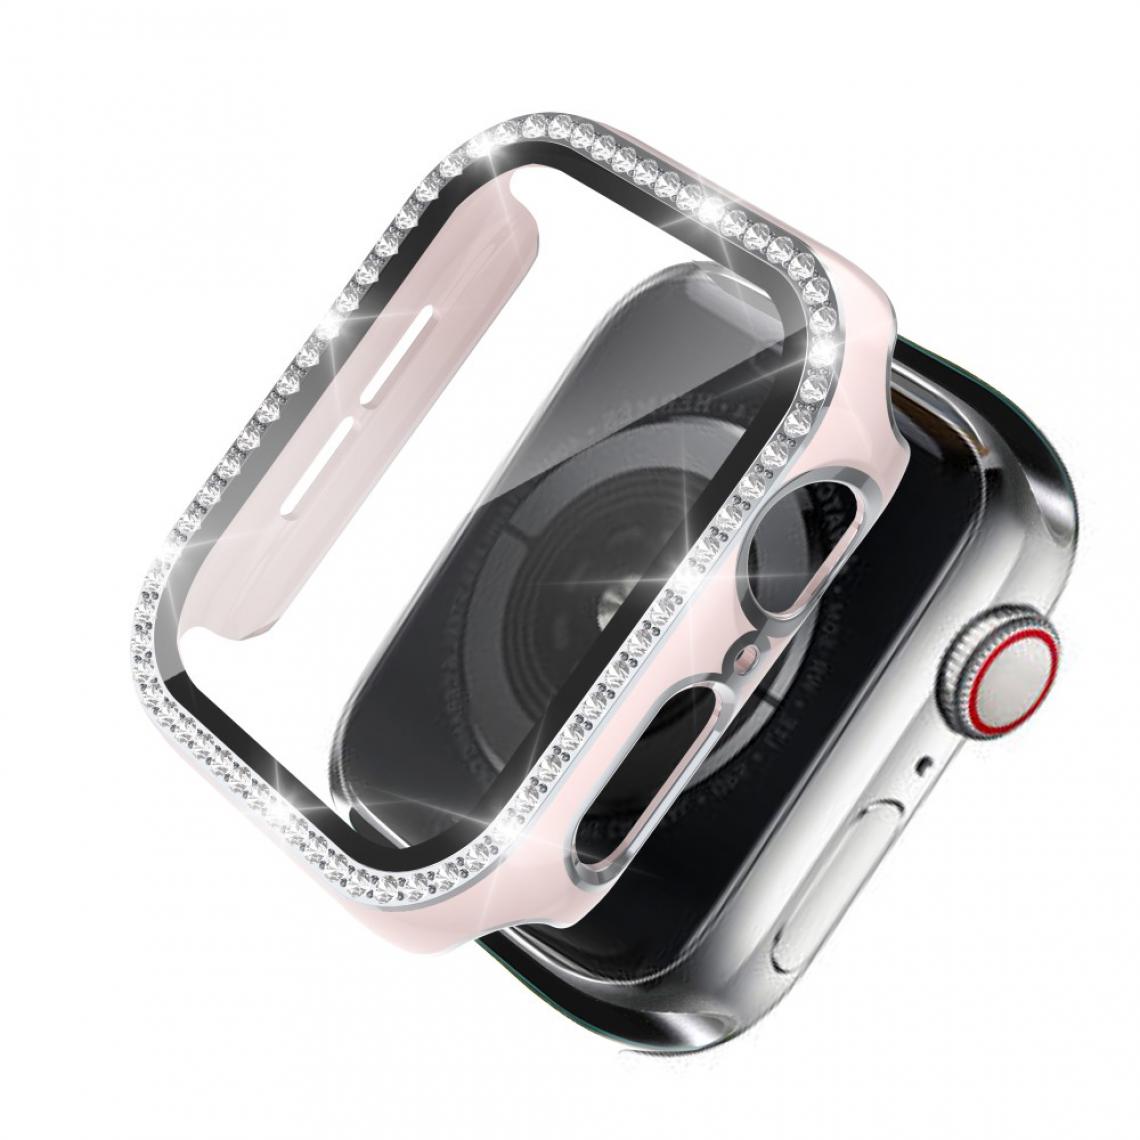 Other - Coque en TPU Cristal de galvanoplastie bicolore Rose/Argent pour votre Apple Watch 1/2/3 38mm - Accessoires bracelet connecté